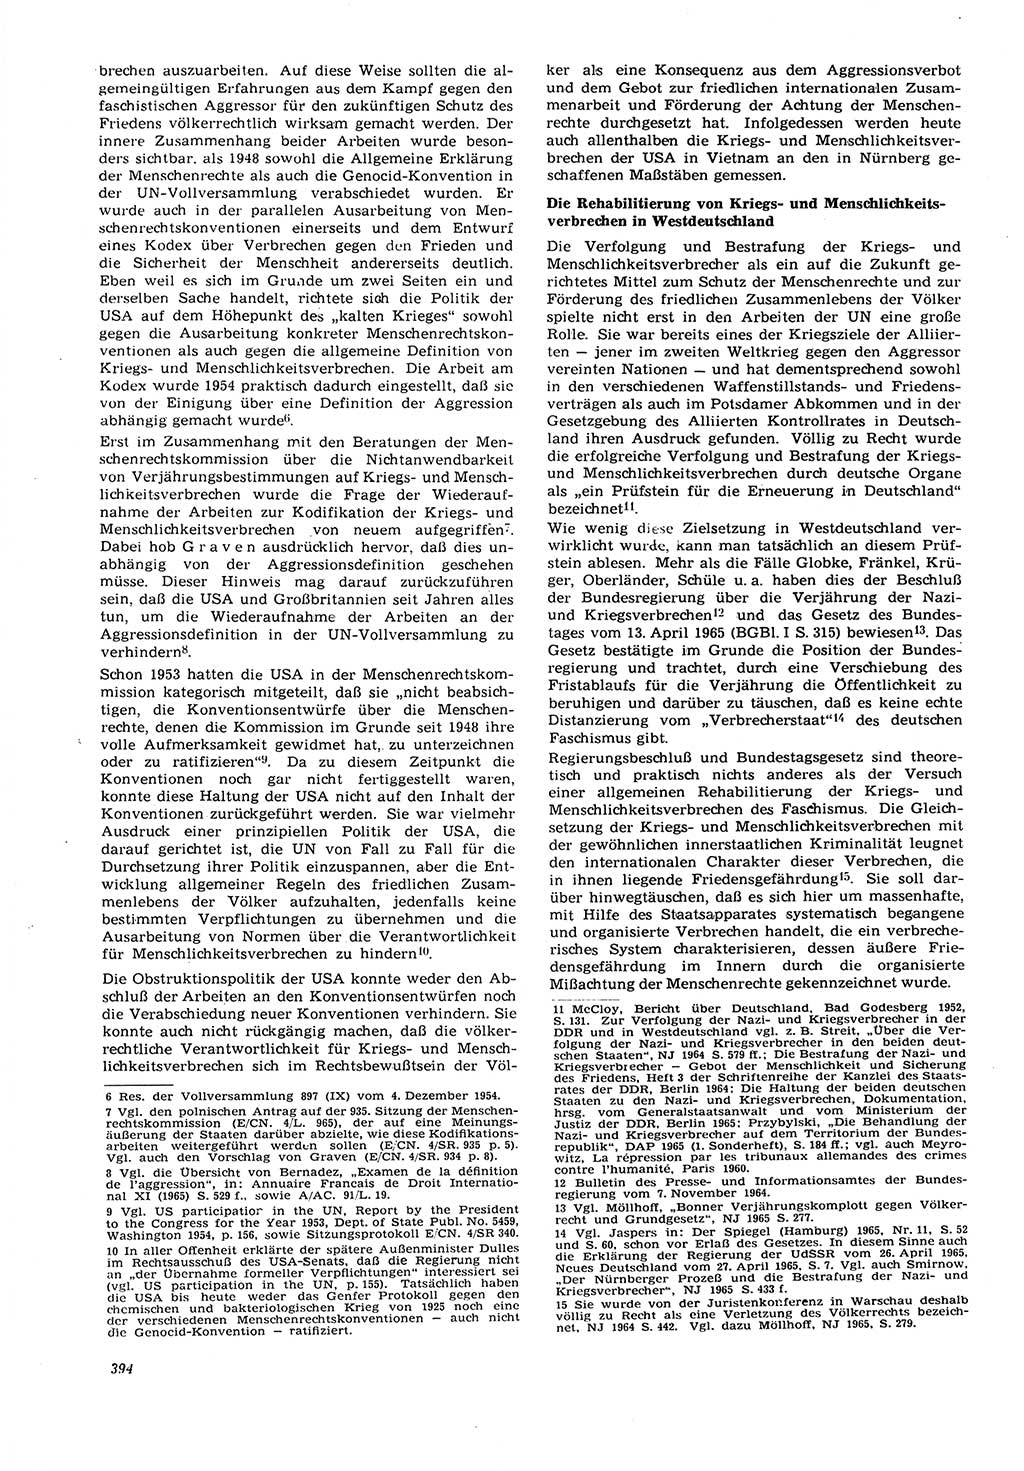 Neue Justiz (NJ), Zeitschrift für Recht und Rechtswissenschaft [Deutsche Demokratische Republik (DDR)], 21. Jahrgang 1967, Seite 394 (NJ DDR 1967, S. 394)